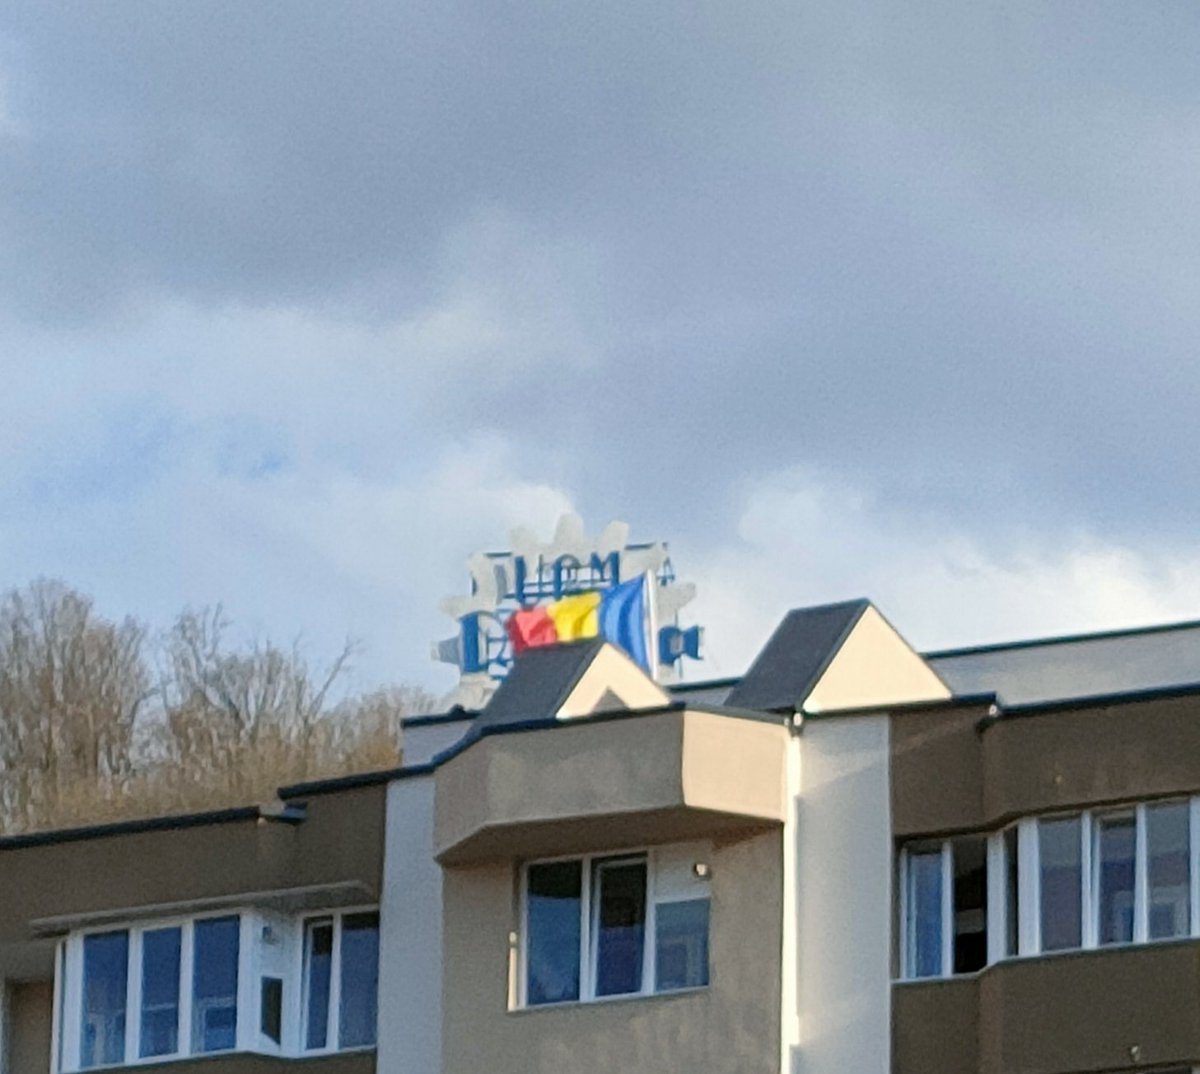 Cât timp va flutura tricolorul, vom ști că suntem România.

Bine, acum au făcut și locatarii un gest după ce primăria le-a izolat fațada, pentru că Centru.